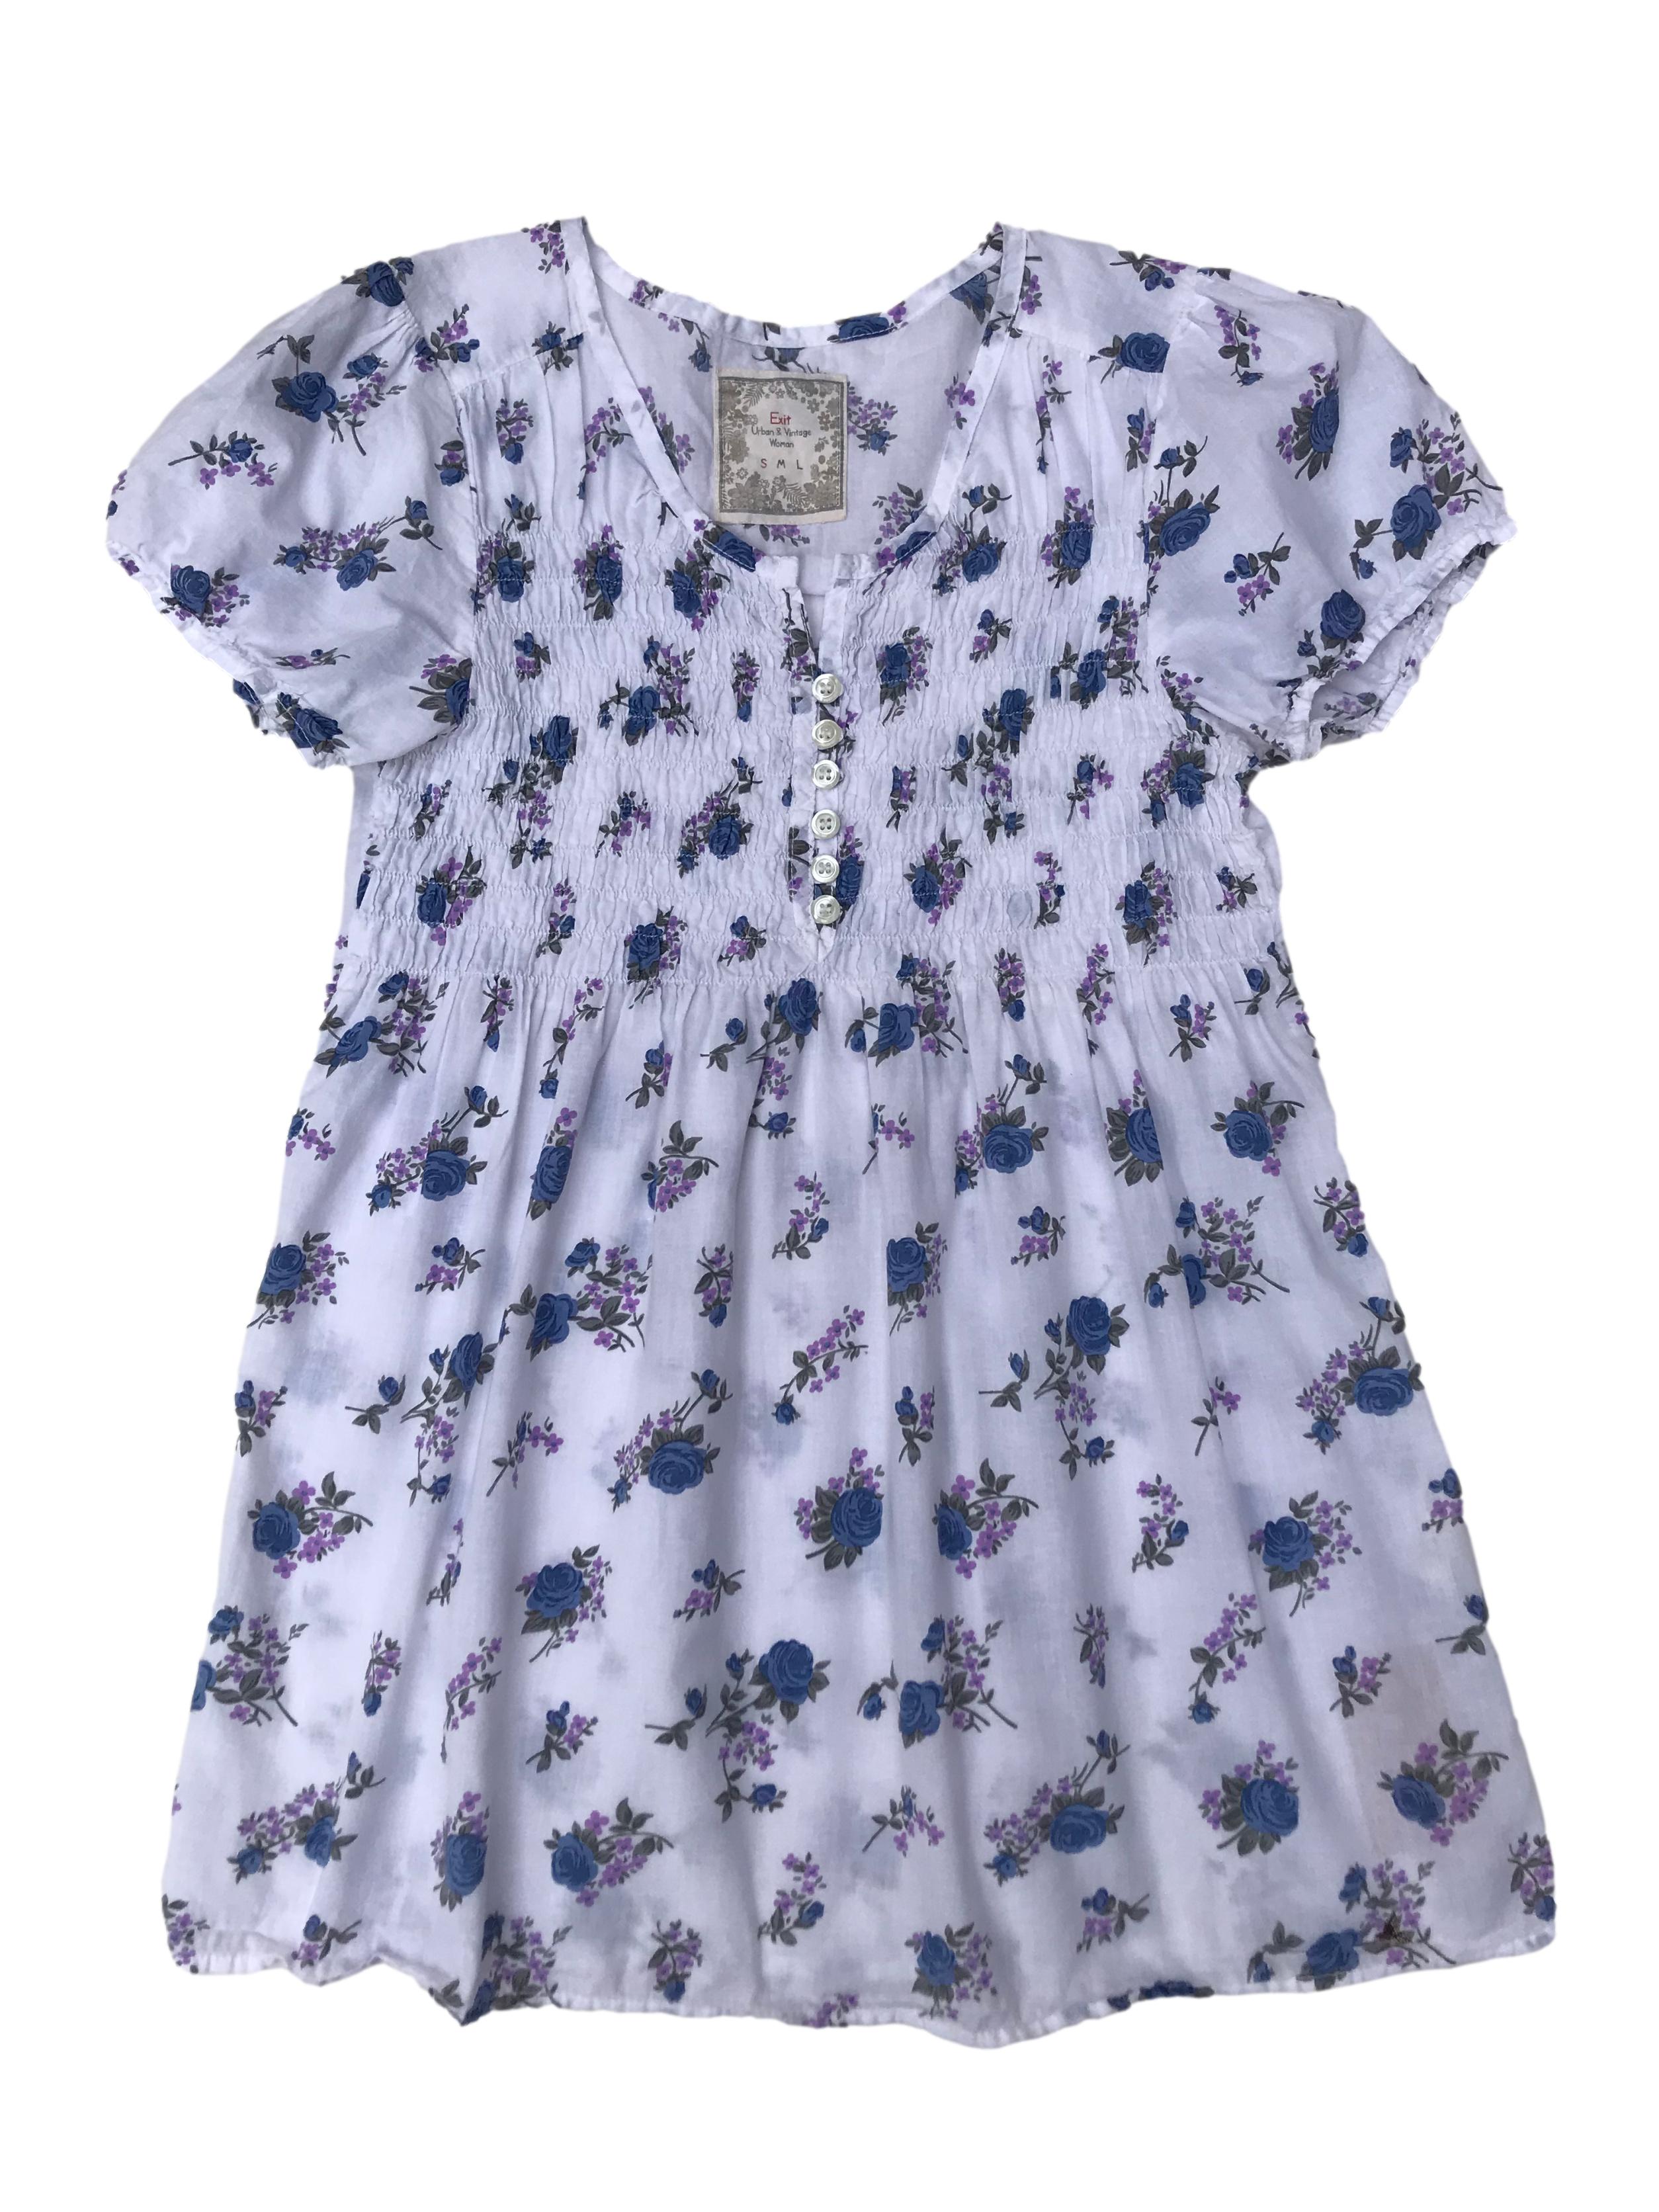 Blusa Exit blanca con estampado de flores azules y moradas, panal de abeja en el pecho con botones. Largo 70cm